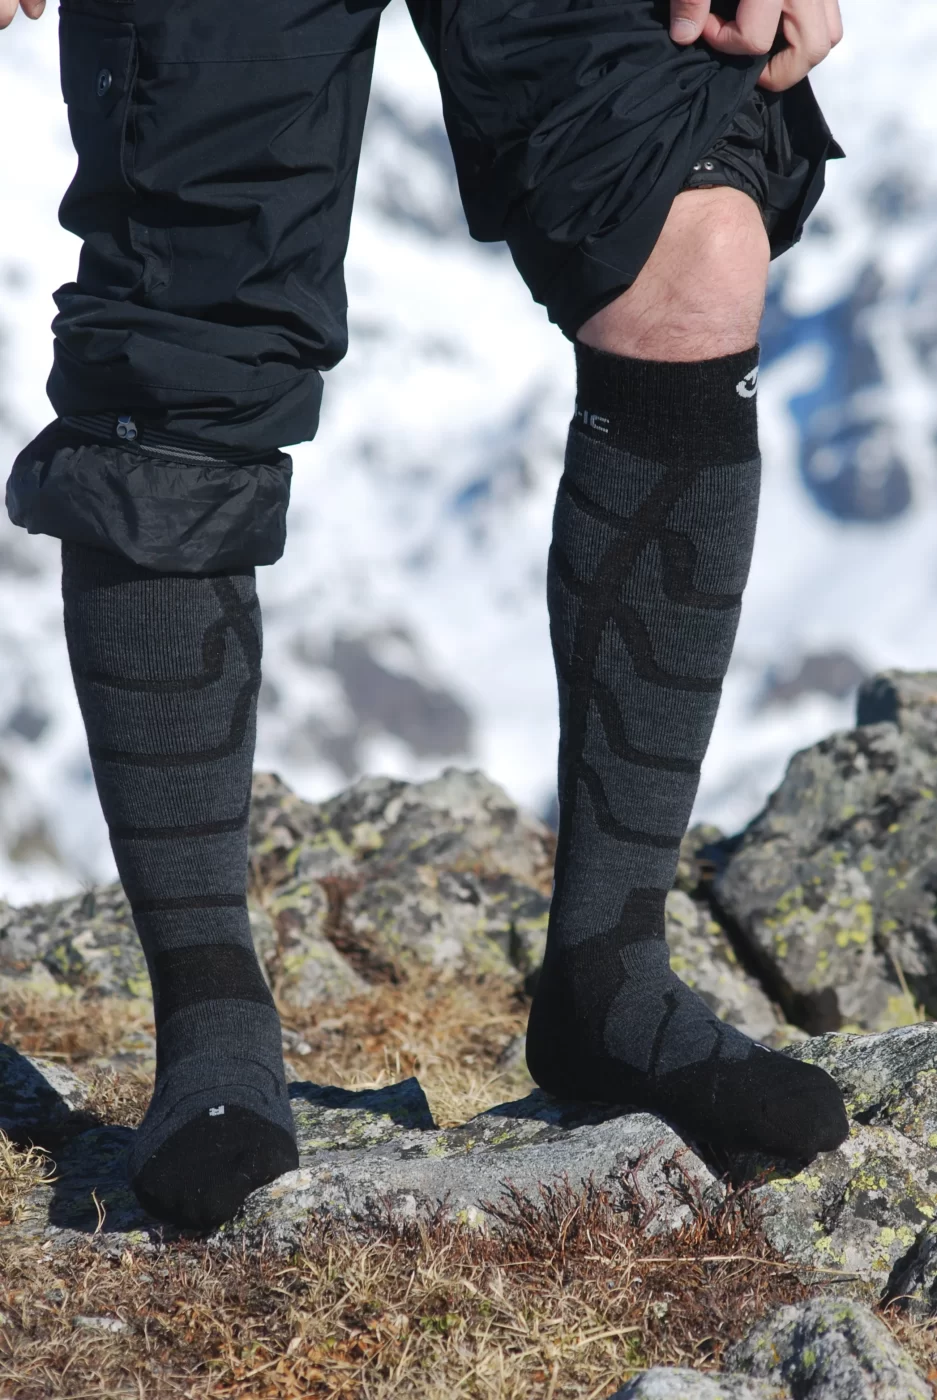 Chaussettes de ski Therm-ic Ski Warm montantes jusqu'aux genoux